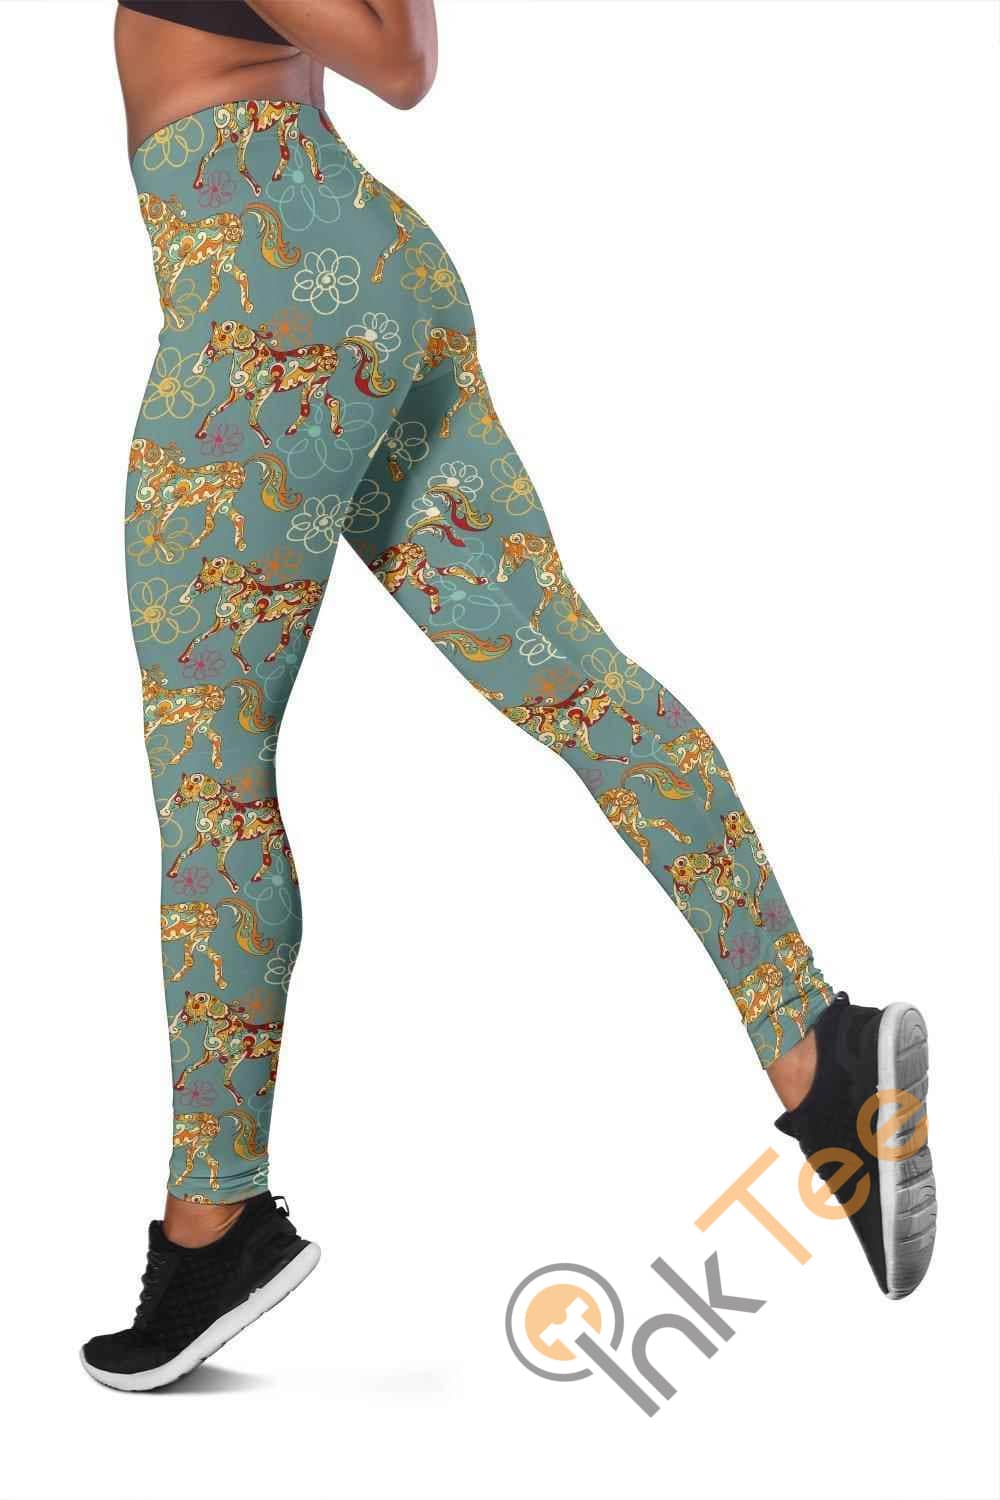 Inktee Store - Flower Horse 3D All Over Print For Yoga Fitness Women'S Leggings Image